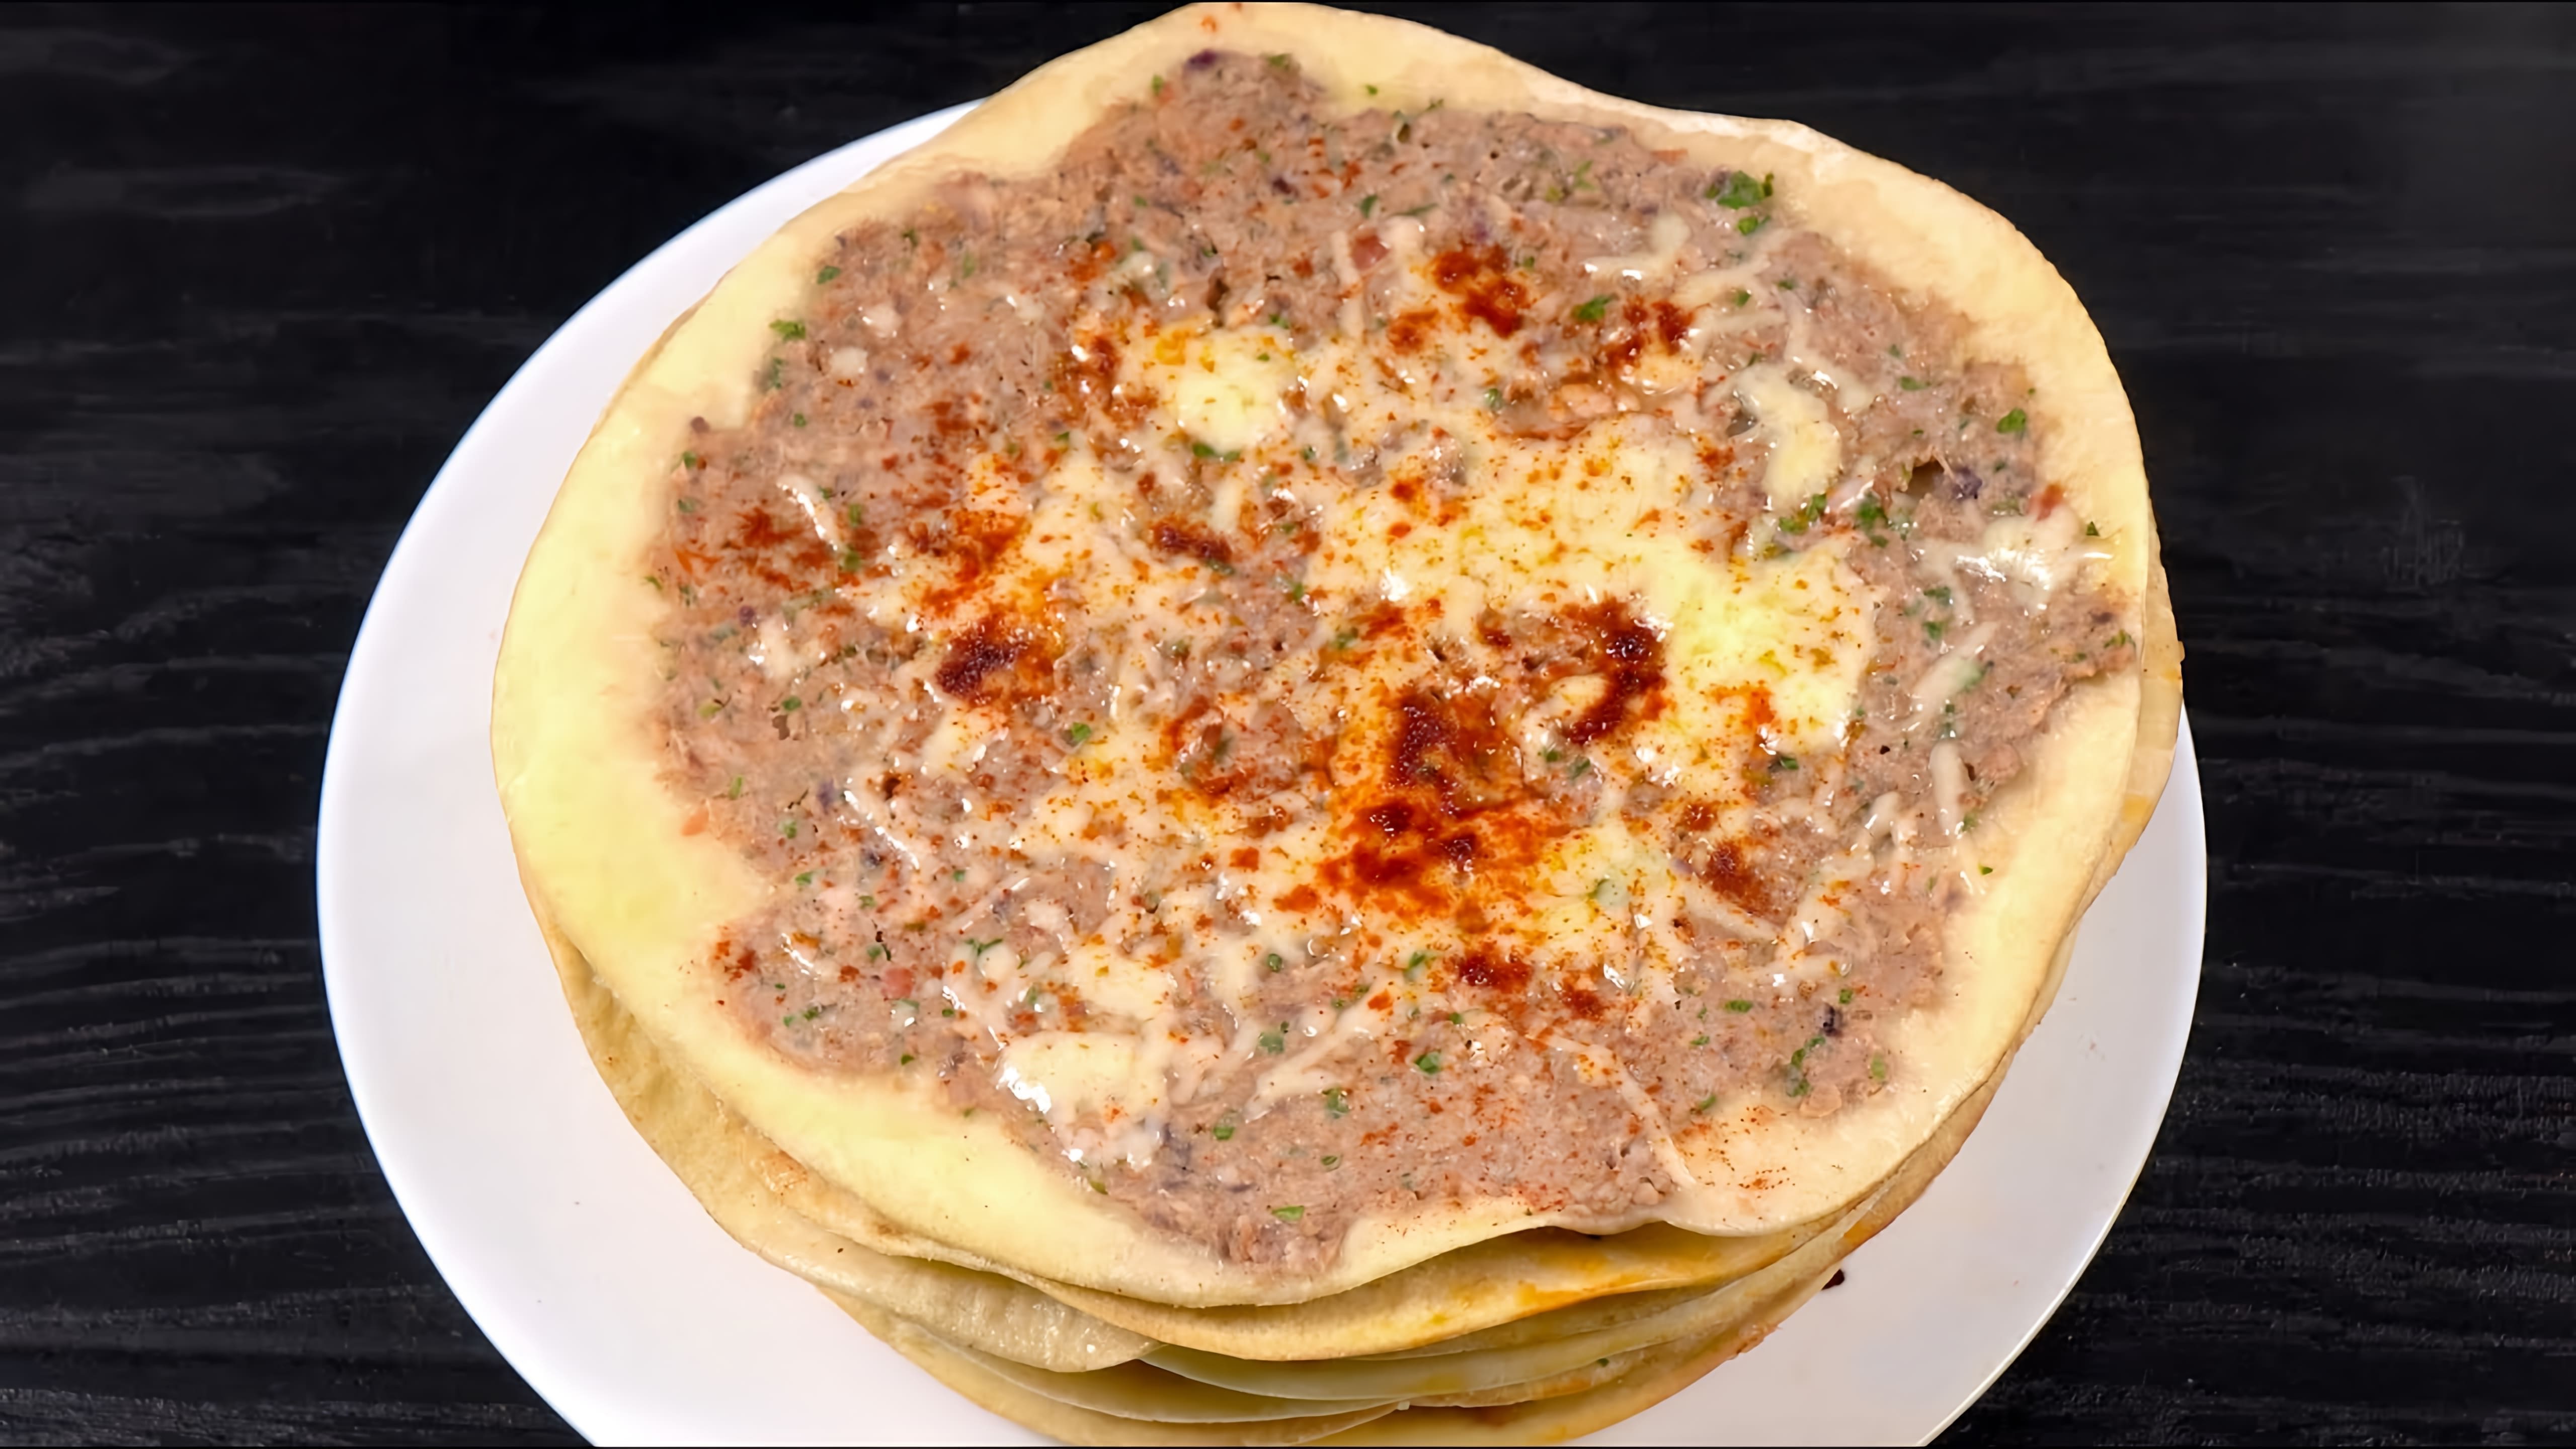 В этом видео демонстрируется рецепт приготовления арабской лепешки с мясом на сковороде